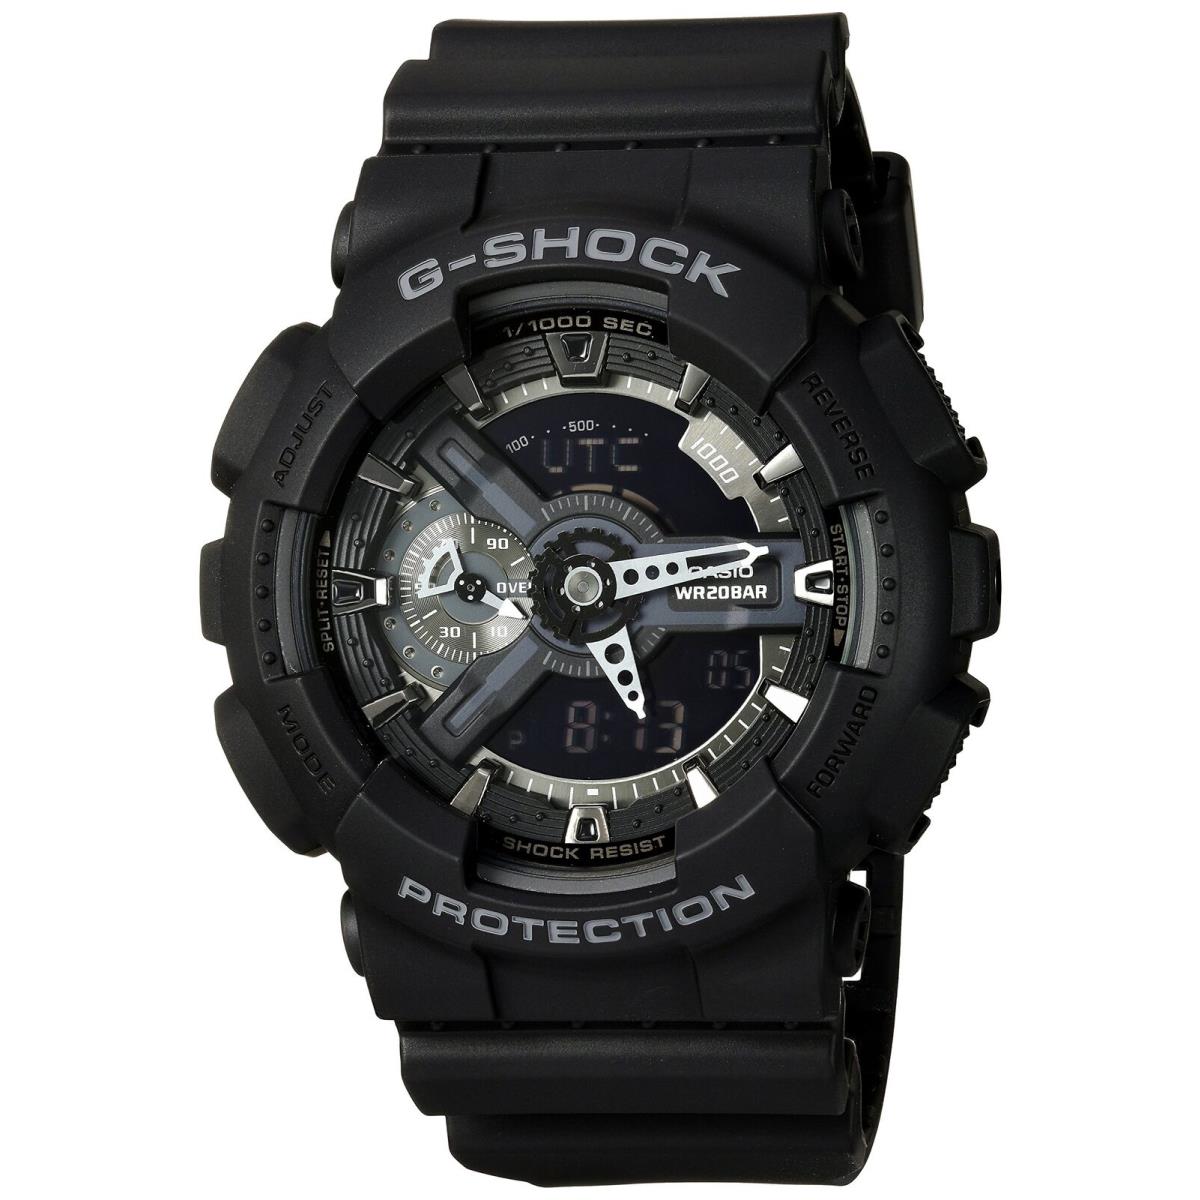 Casio G-shock Mens Analog Digital Wristwatch GA-110-1BCR